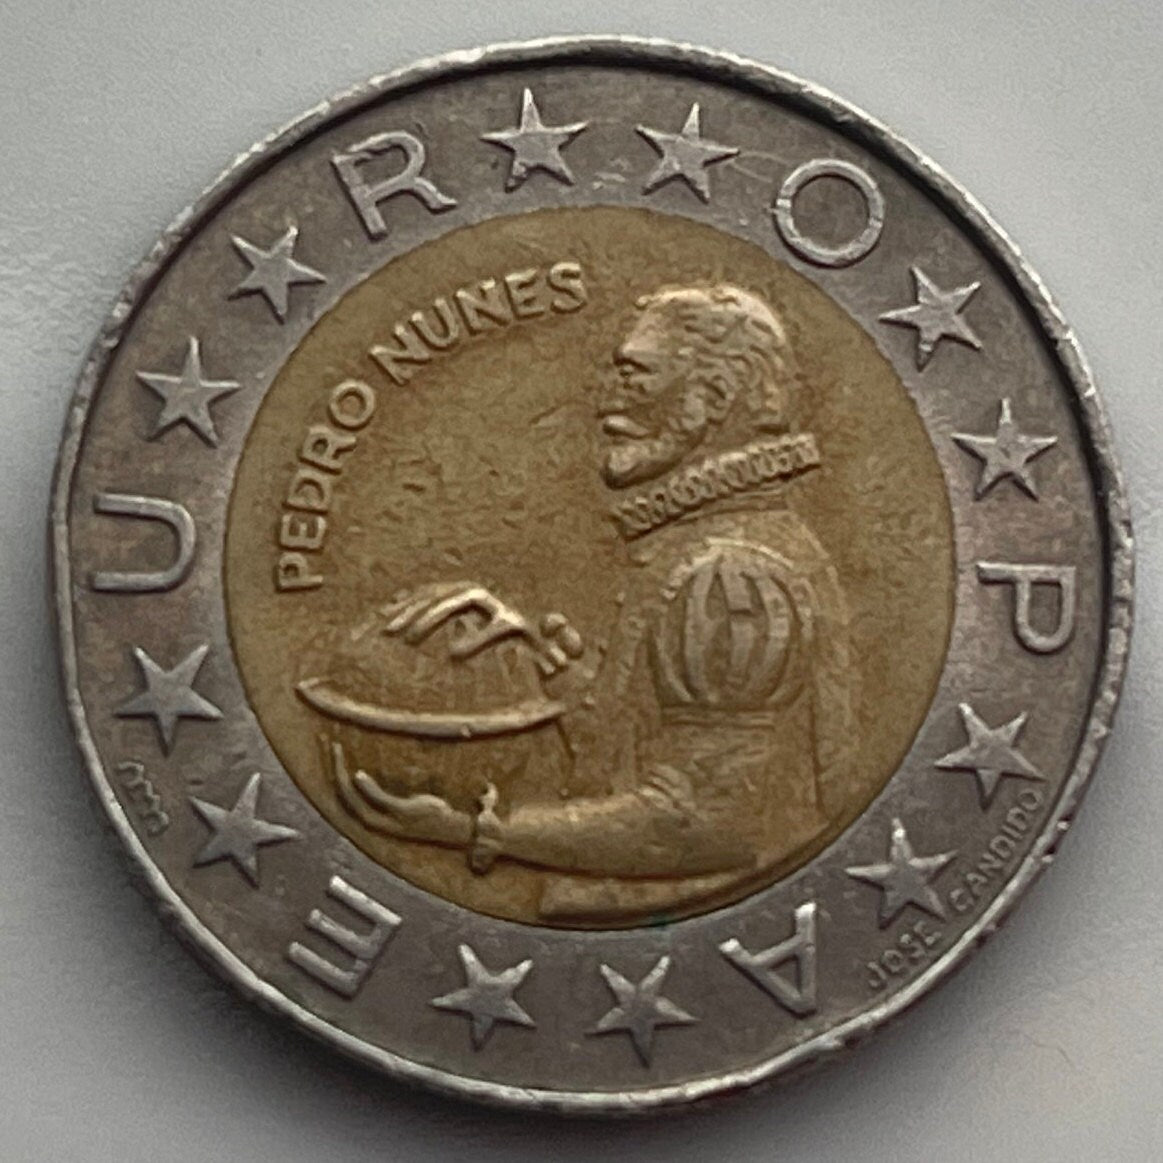 Mathematician Pedro Nunes 100 Escudos Portugal Authentic Coin Money for Jewelry (Nonius) (Loxodrome) (Bimetallic)